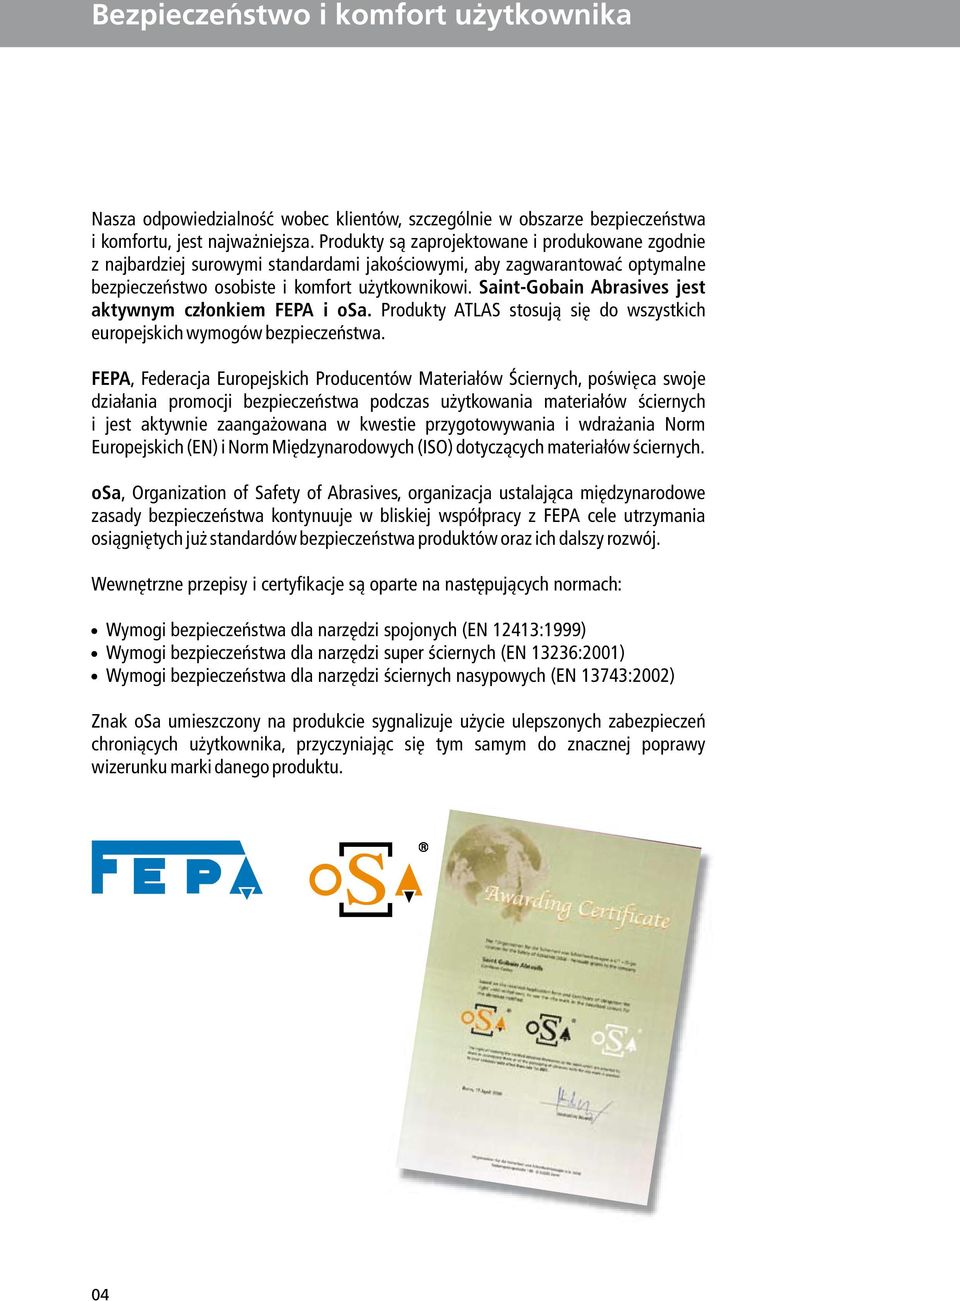 Saint-Gobain Abrasives jest aktywnym członkiem FEPA i osa. Produkty ATLAS stosują się do wszystkich europejskich wymogów bezpieczeństwa.